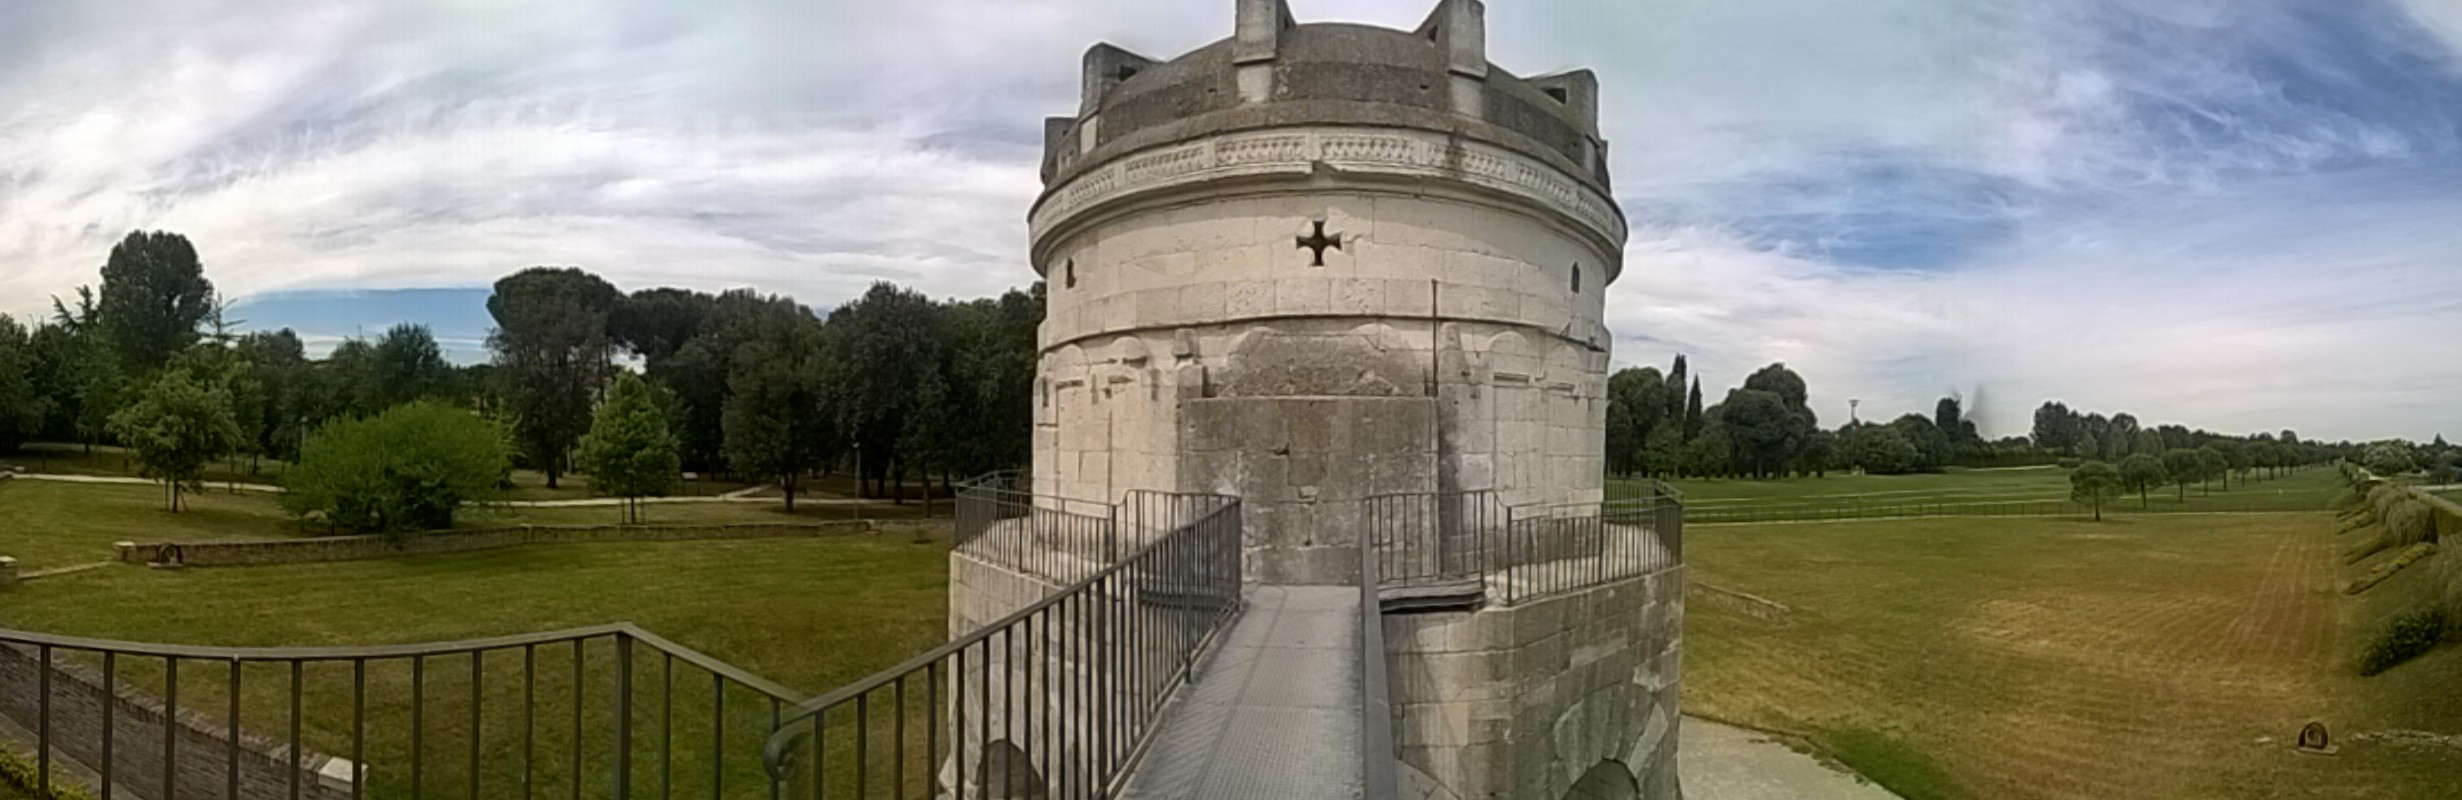 Ravenna Panorama edificio monumento Mausoleo di Teodorico